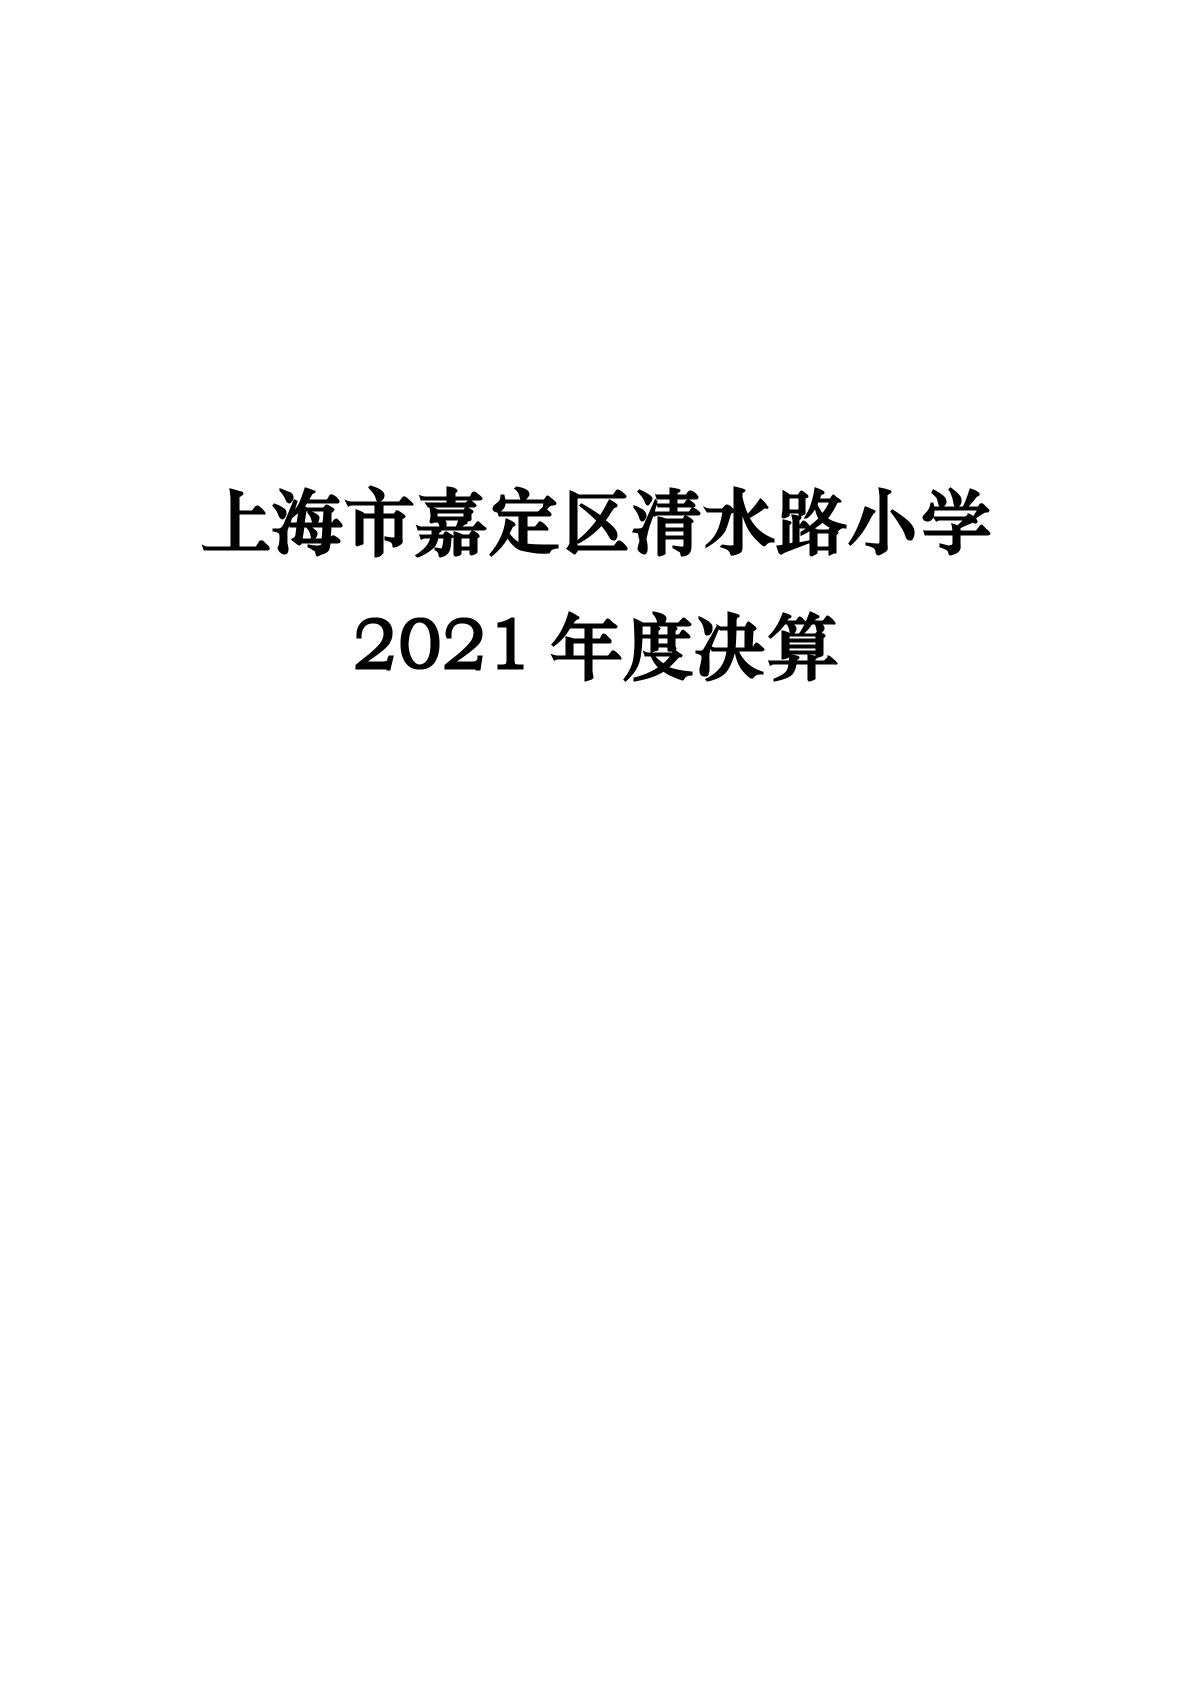 清水路小学2021年度决算（公示）-01.jpg